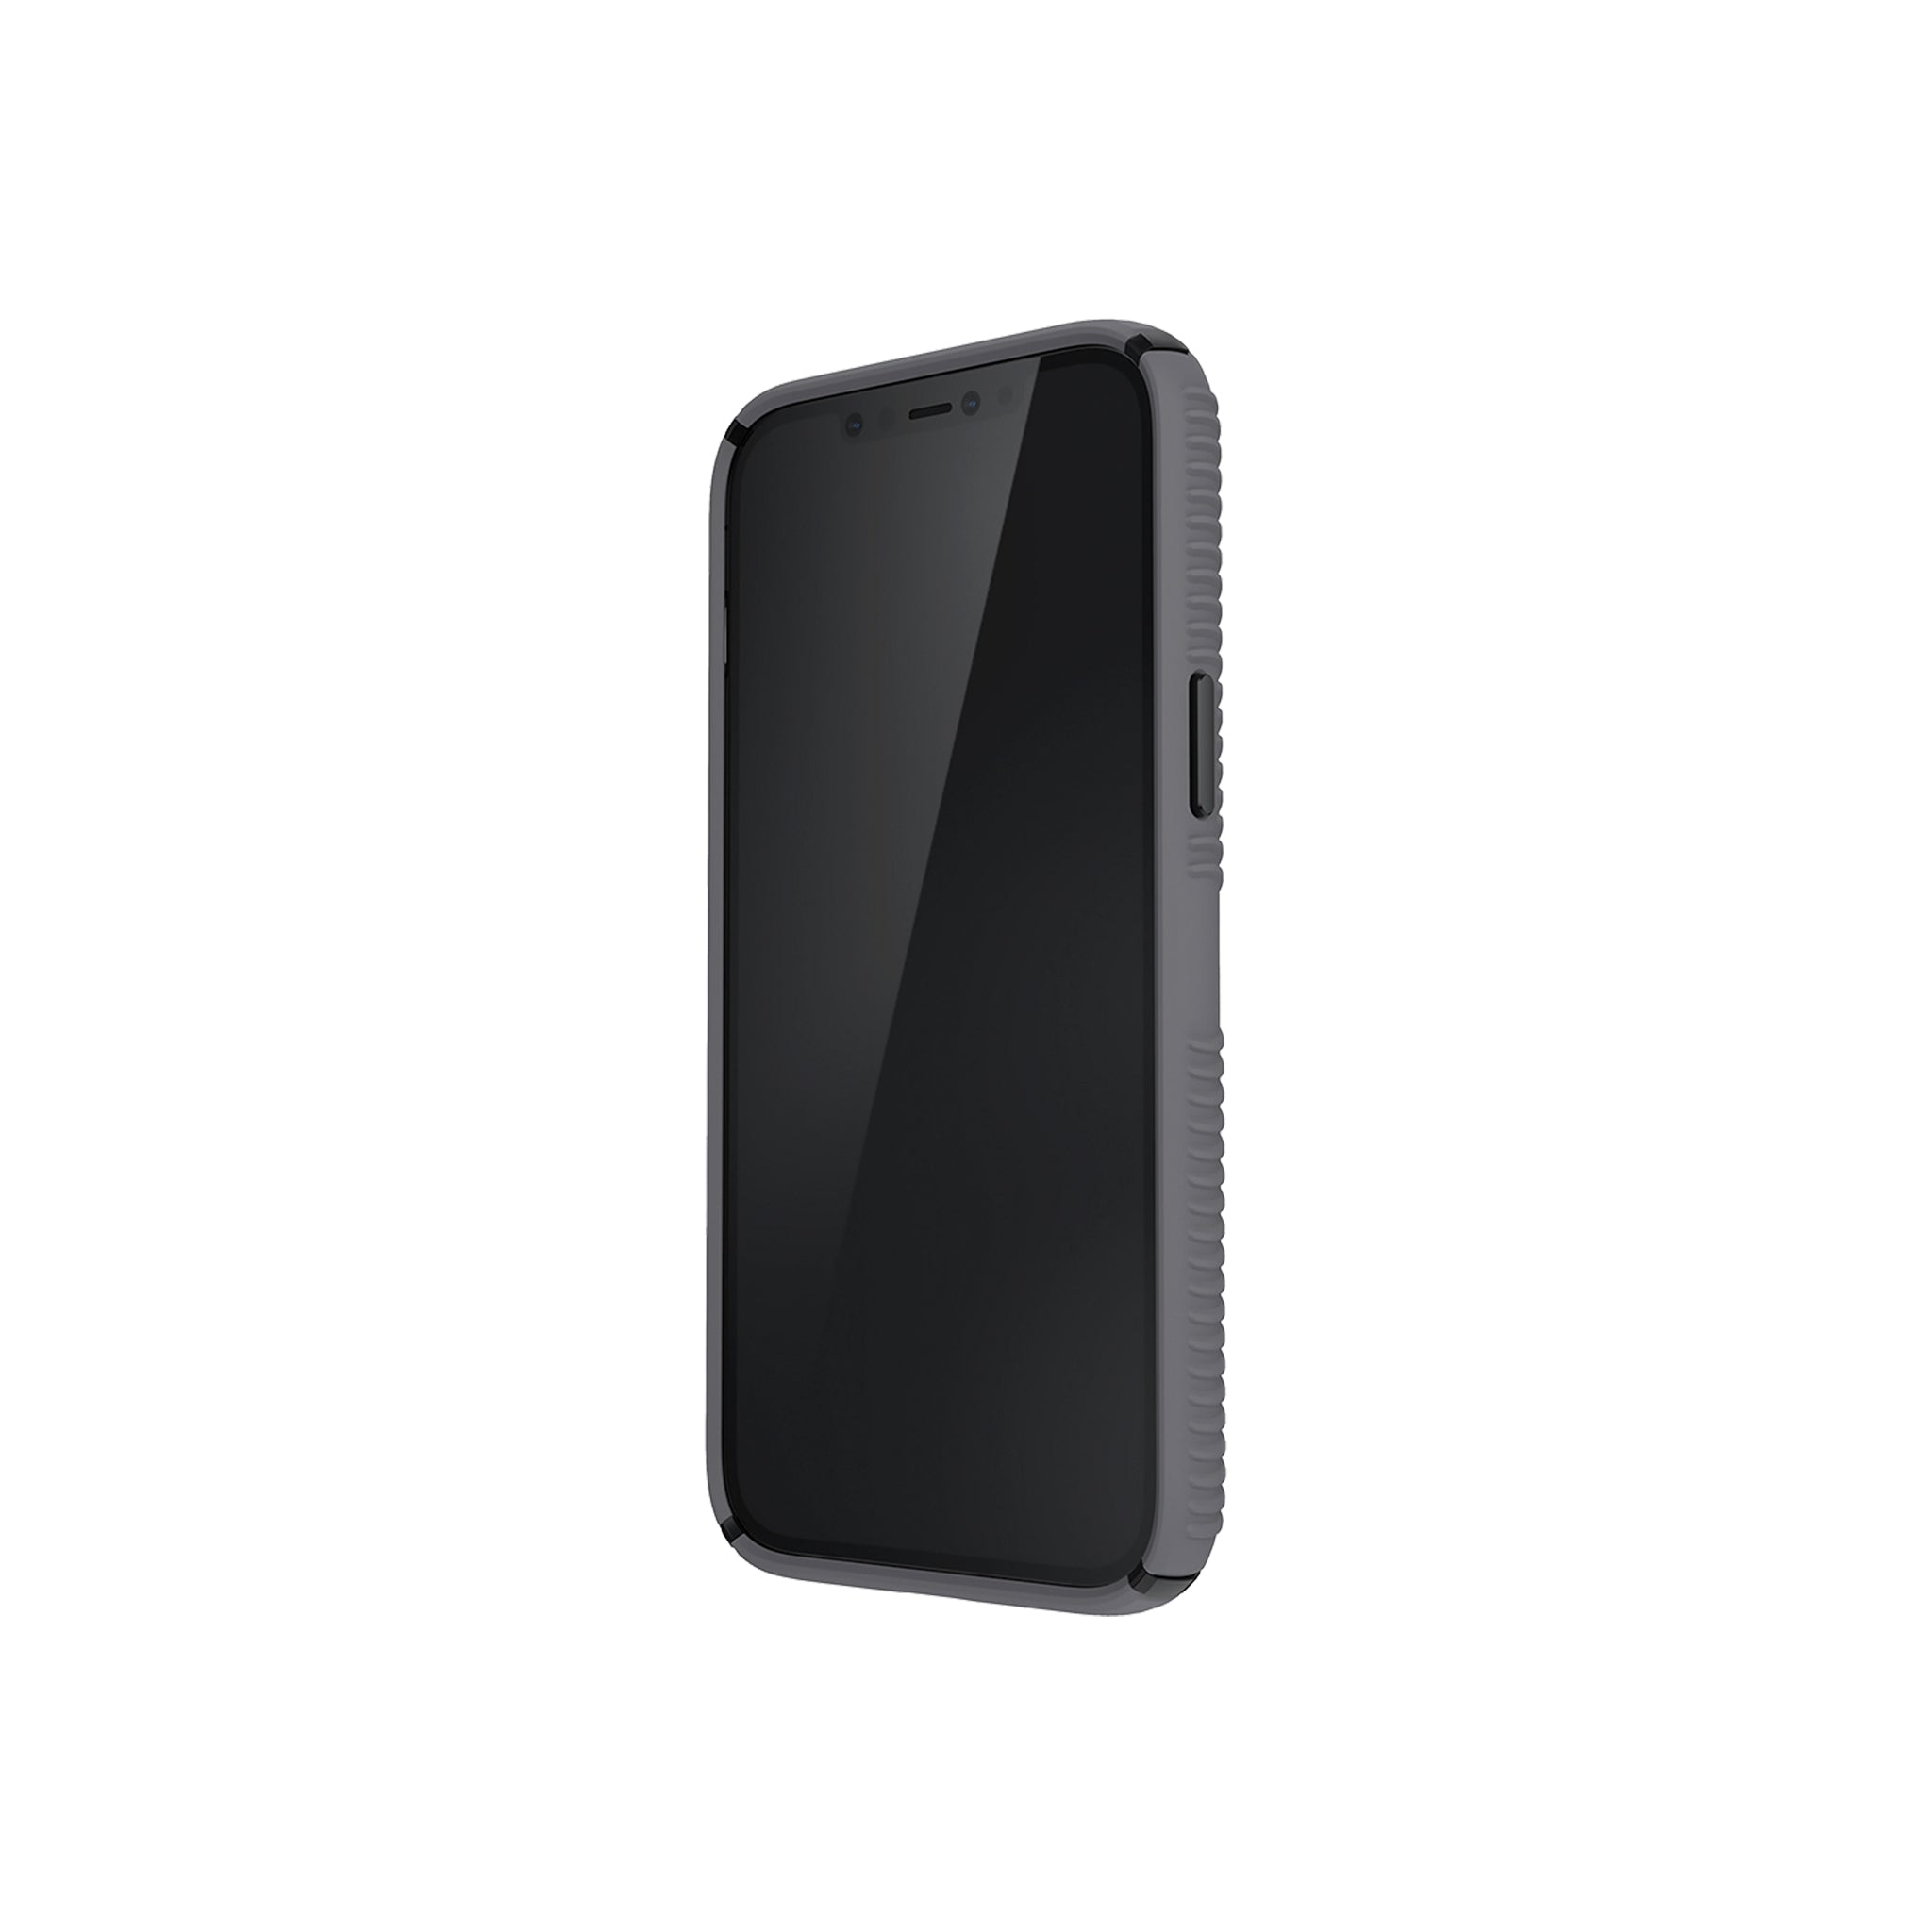 Speck - Presidio2 Grip Case For Apple Iphone 12 Pro Max - Graphite Grey